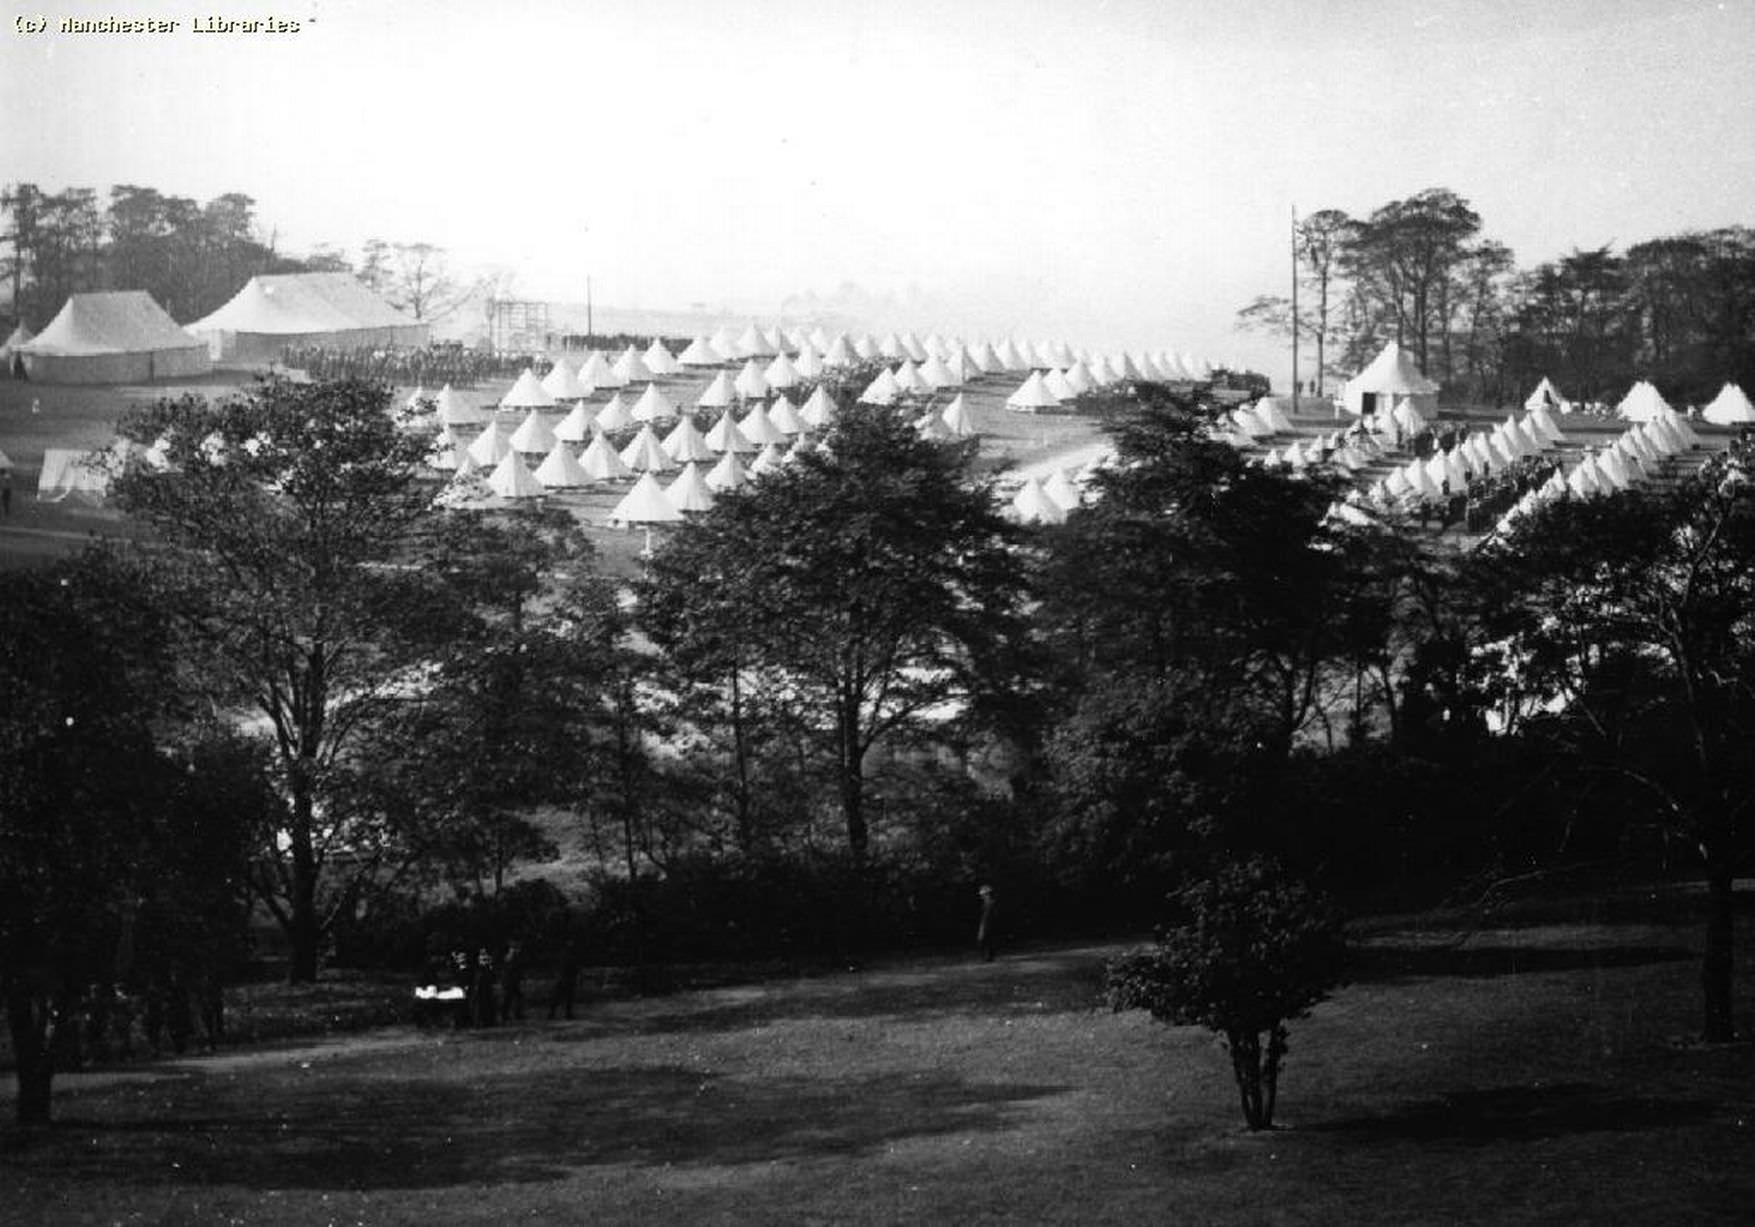 Manchester Regiment, Heaton Park camp